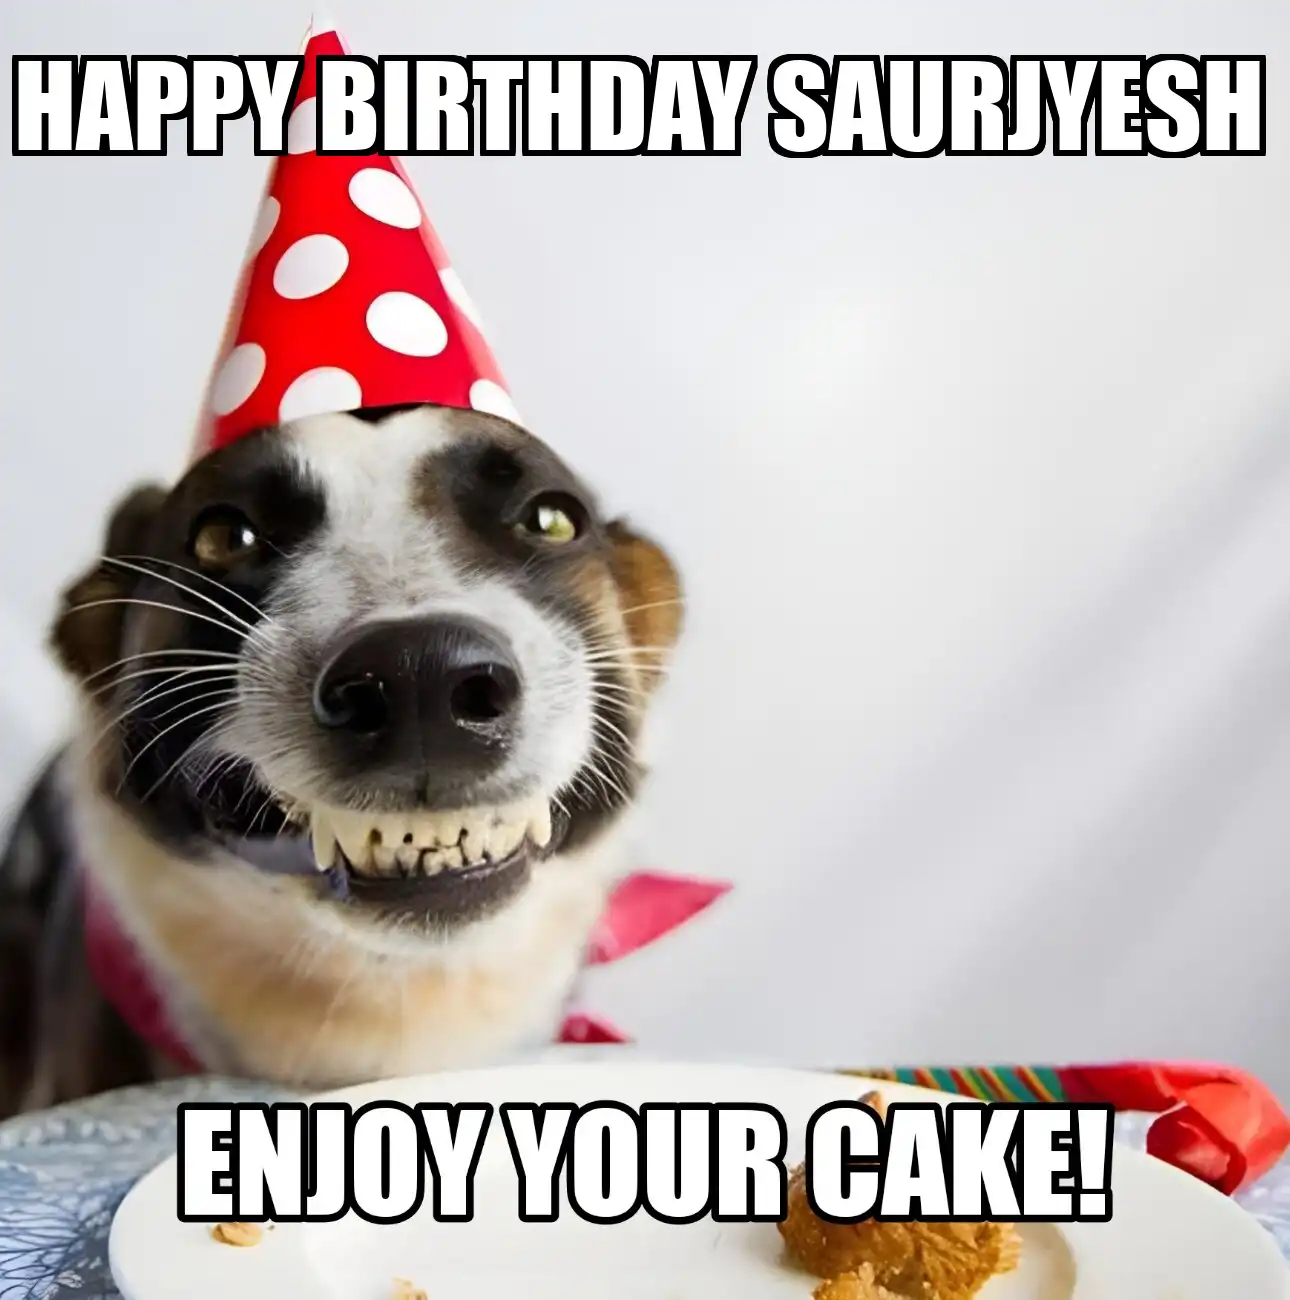 Happy Birthday Saurjyesh Enjoy Your Cake Dog Meme